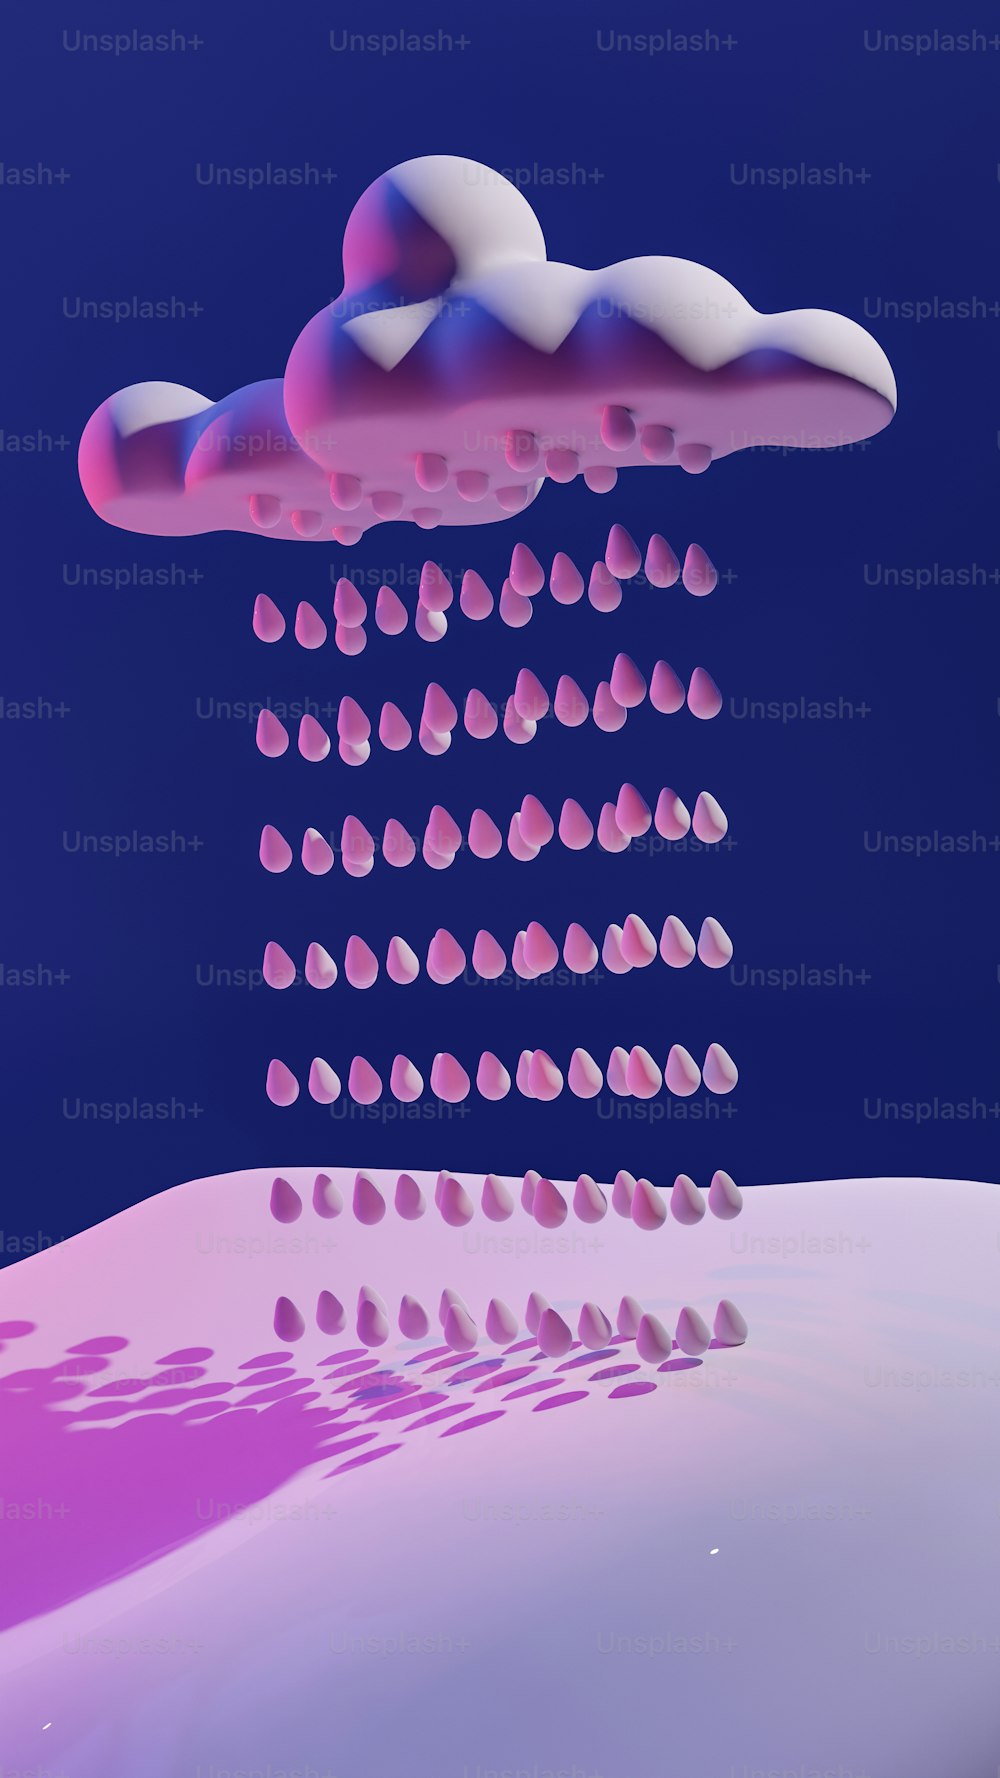 Une image générée par ordinateur d’un nuage rose